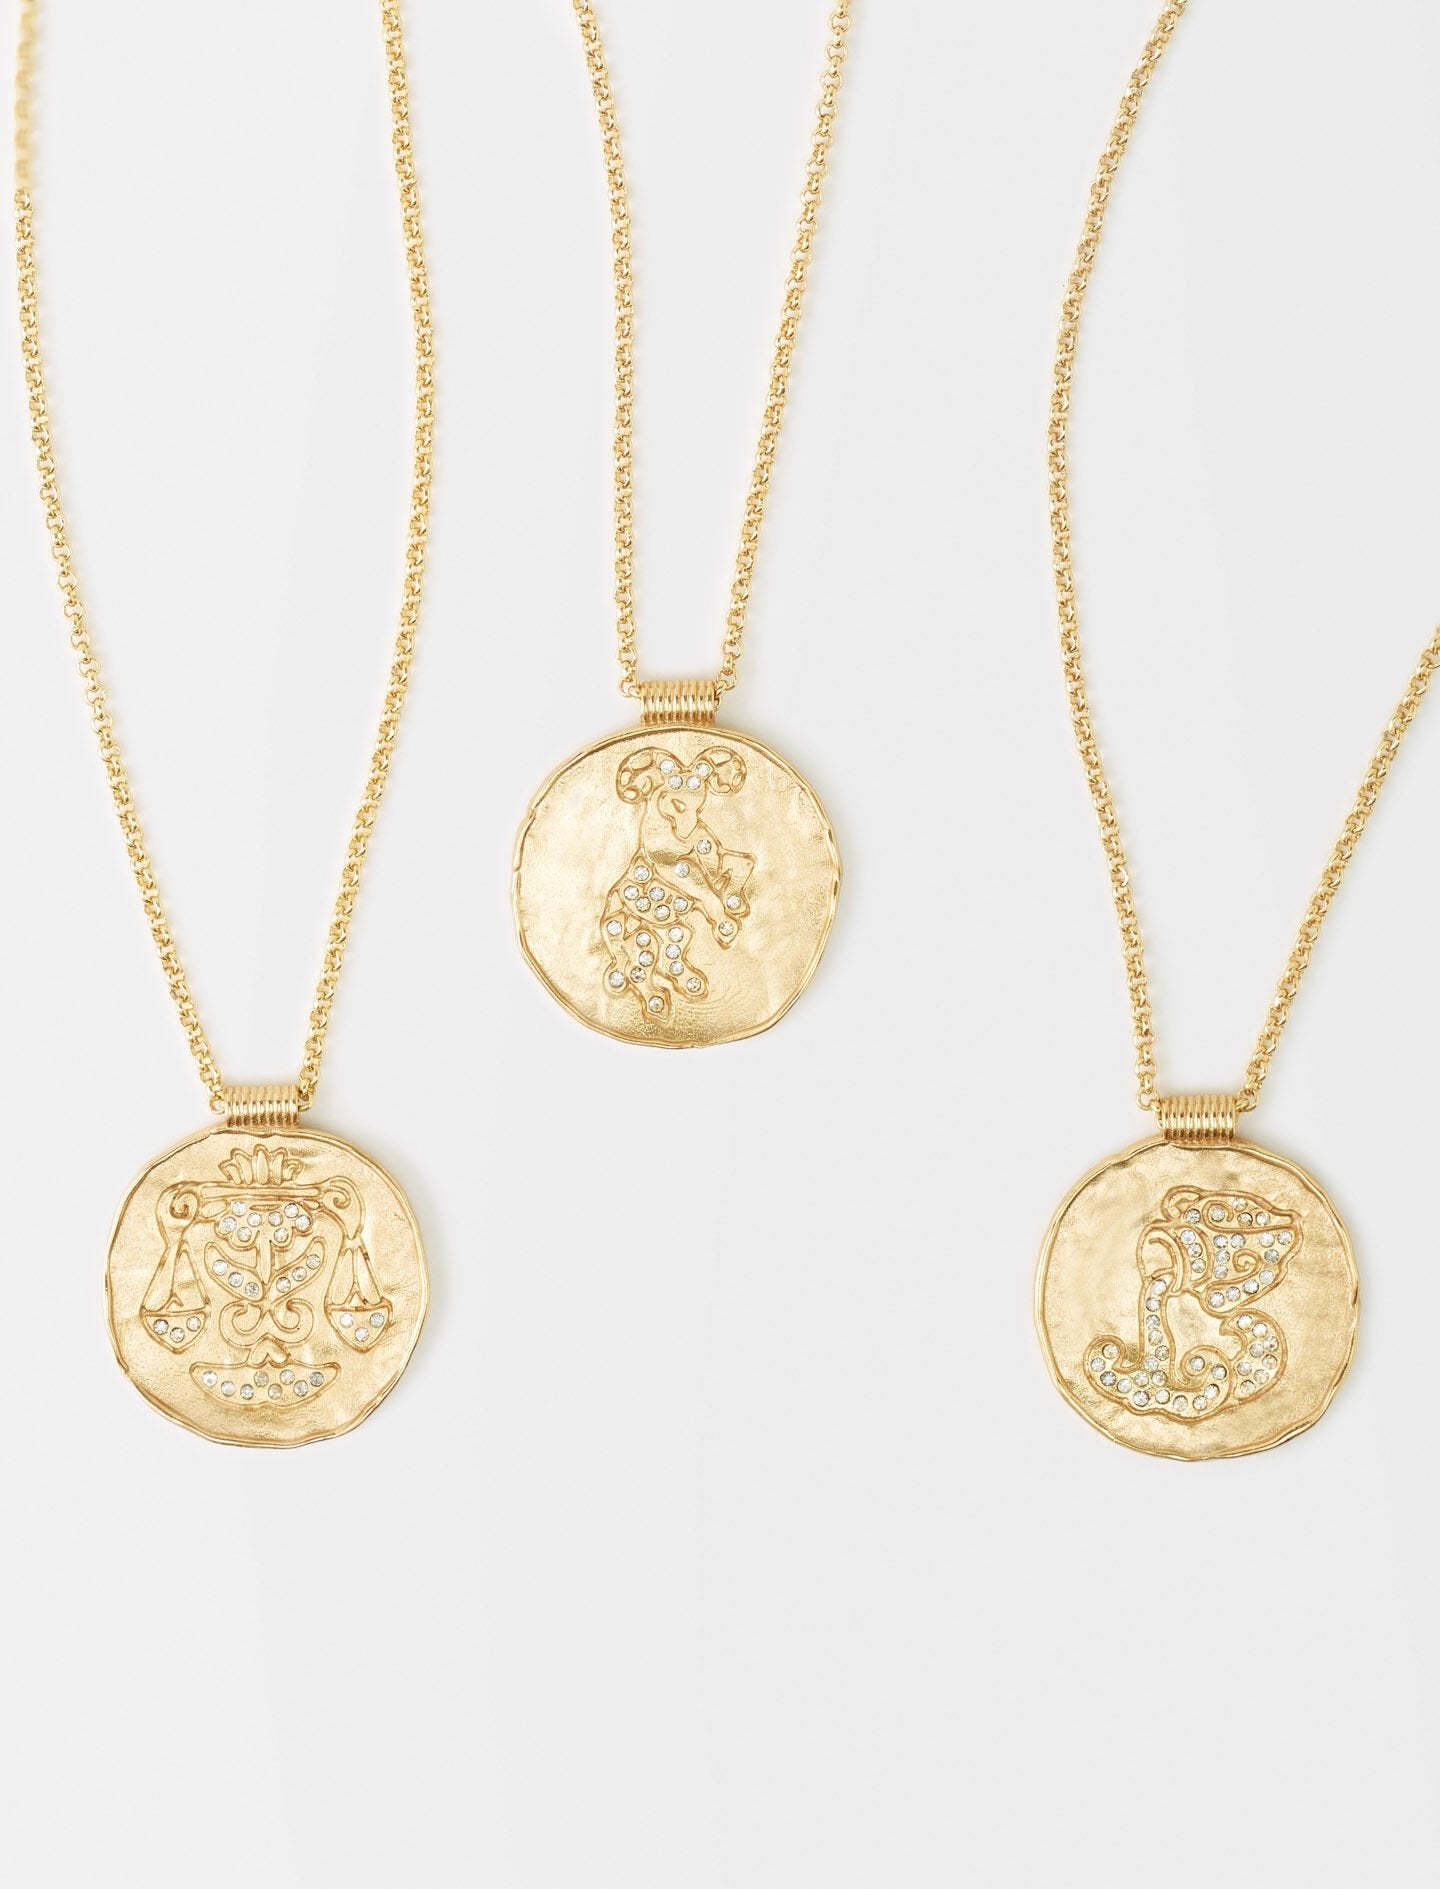 Capricorn- Capricorn zodiac medal